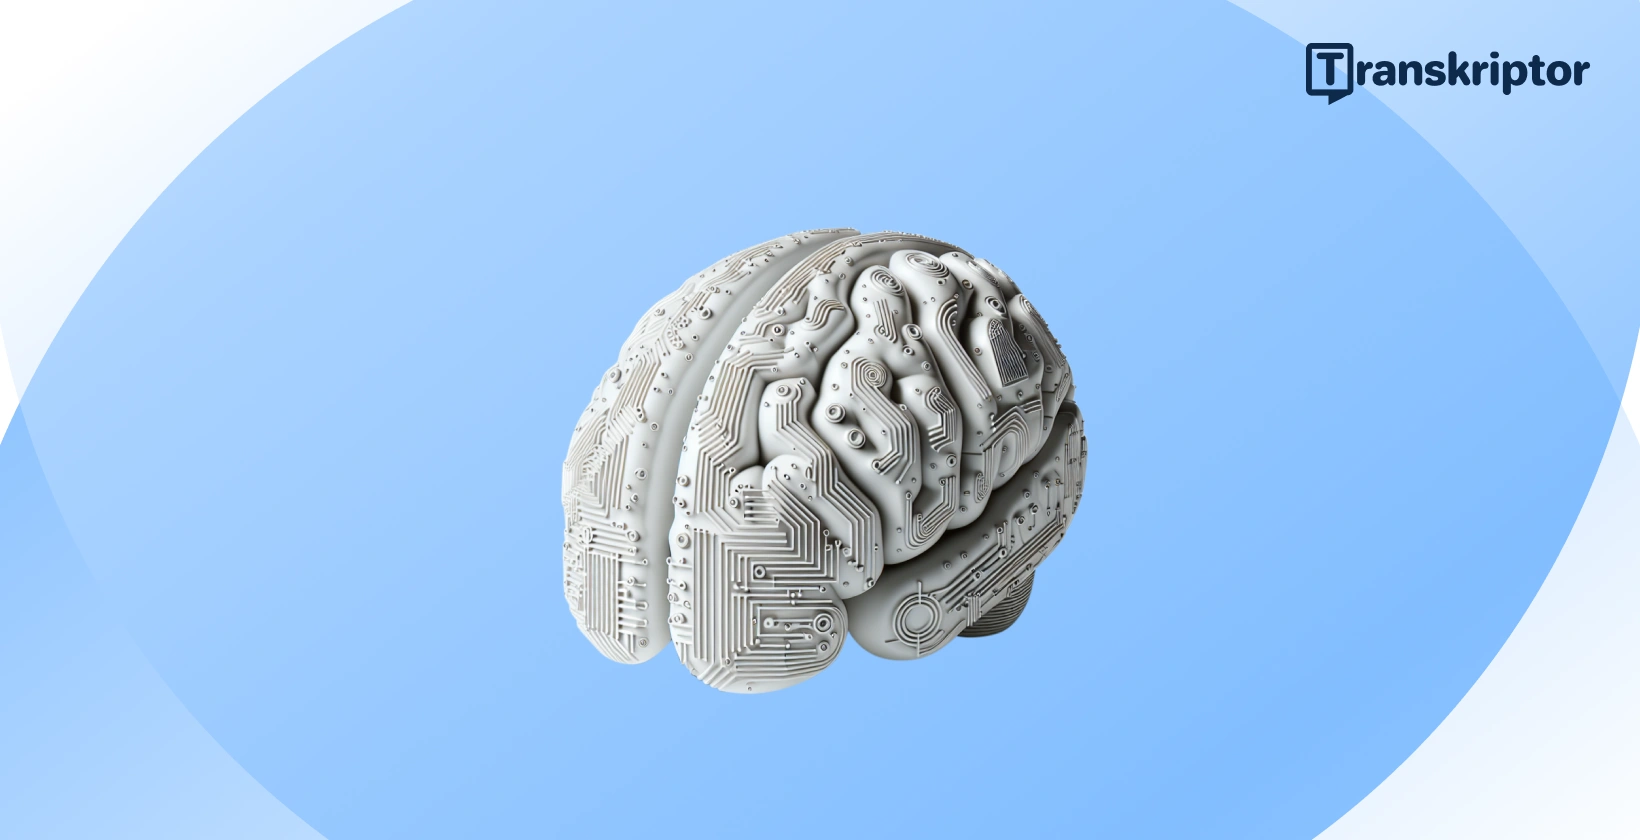 Ilustracija AI mozga koja odražava integraciju umjetne inteligencije u moderne računovodstvene prakse.